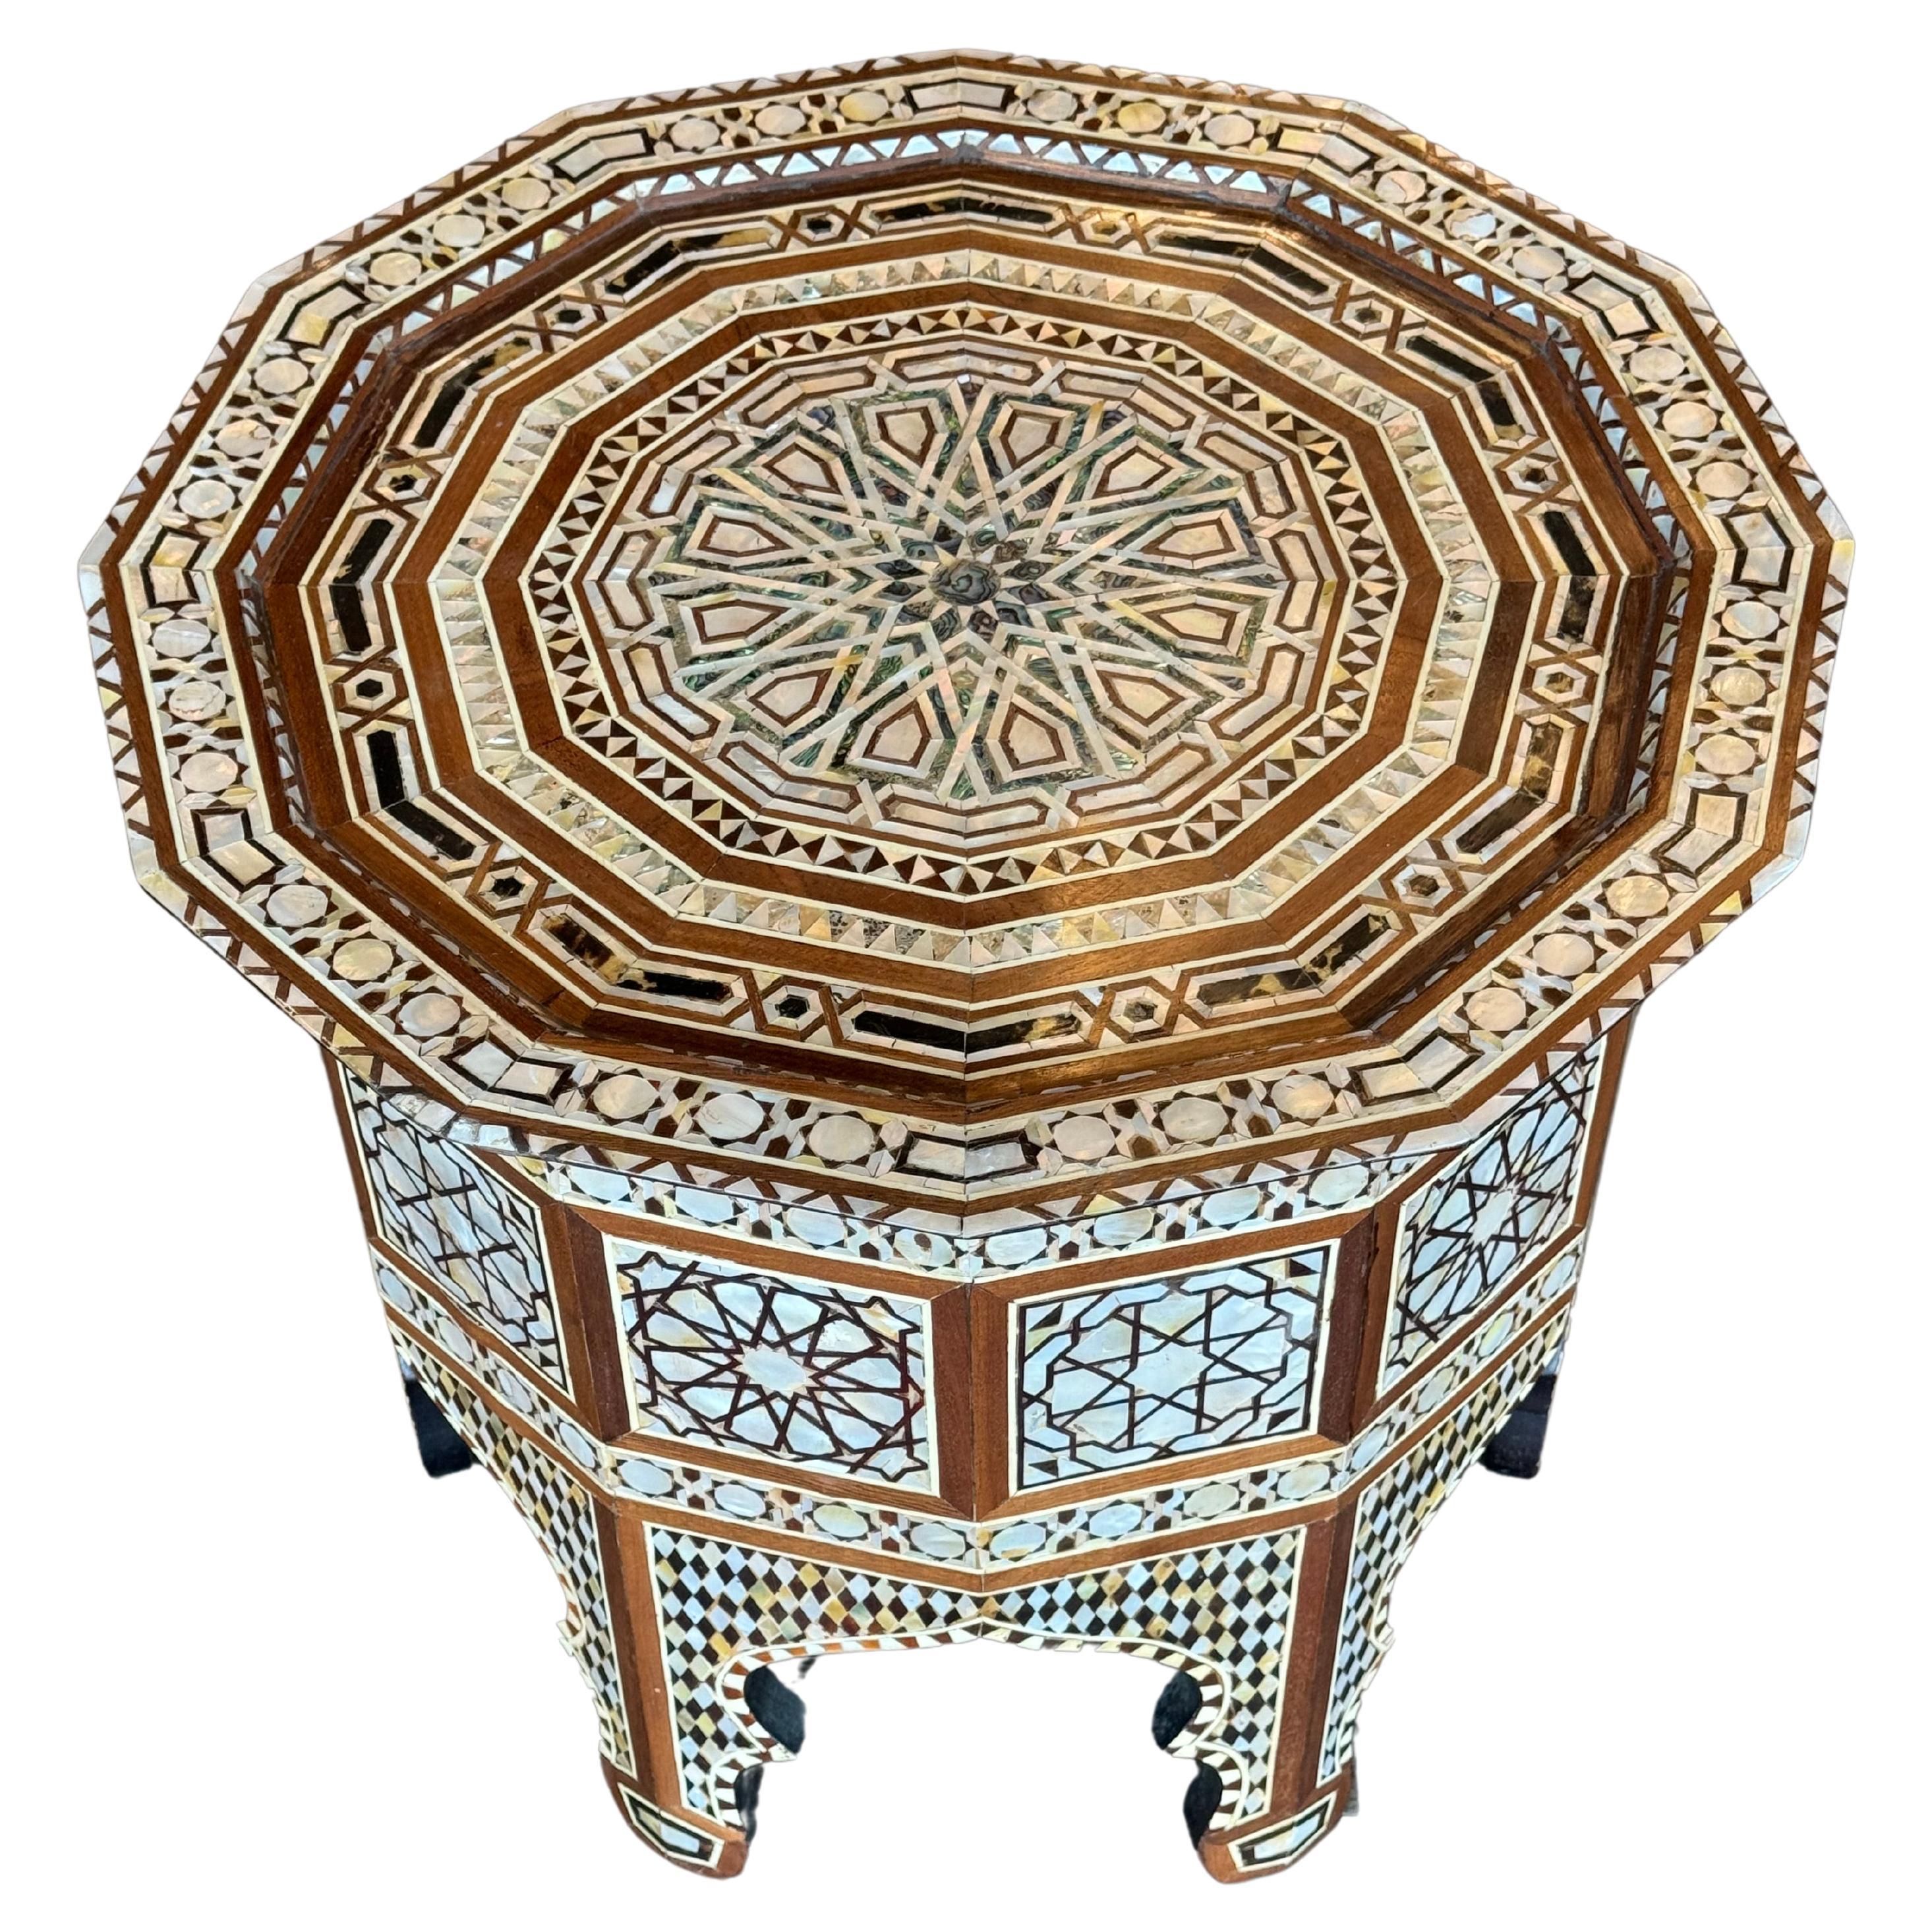 Table basse hexagonale mauresque  
Fabriqué avec des pierres précieuses ivoire et turquoise
Trouvaille antique spéciale, unique en son genre, provenant de Martyn Lawrence Bullard.



